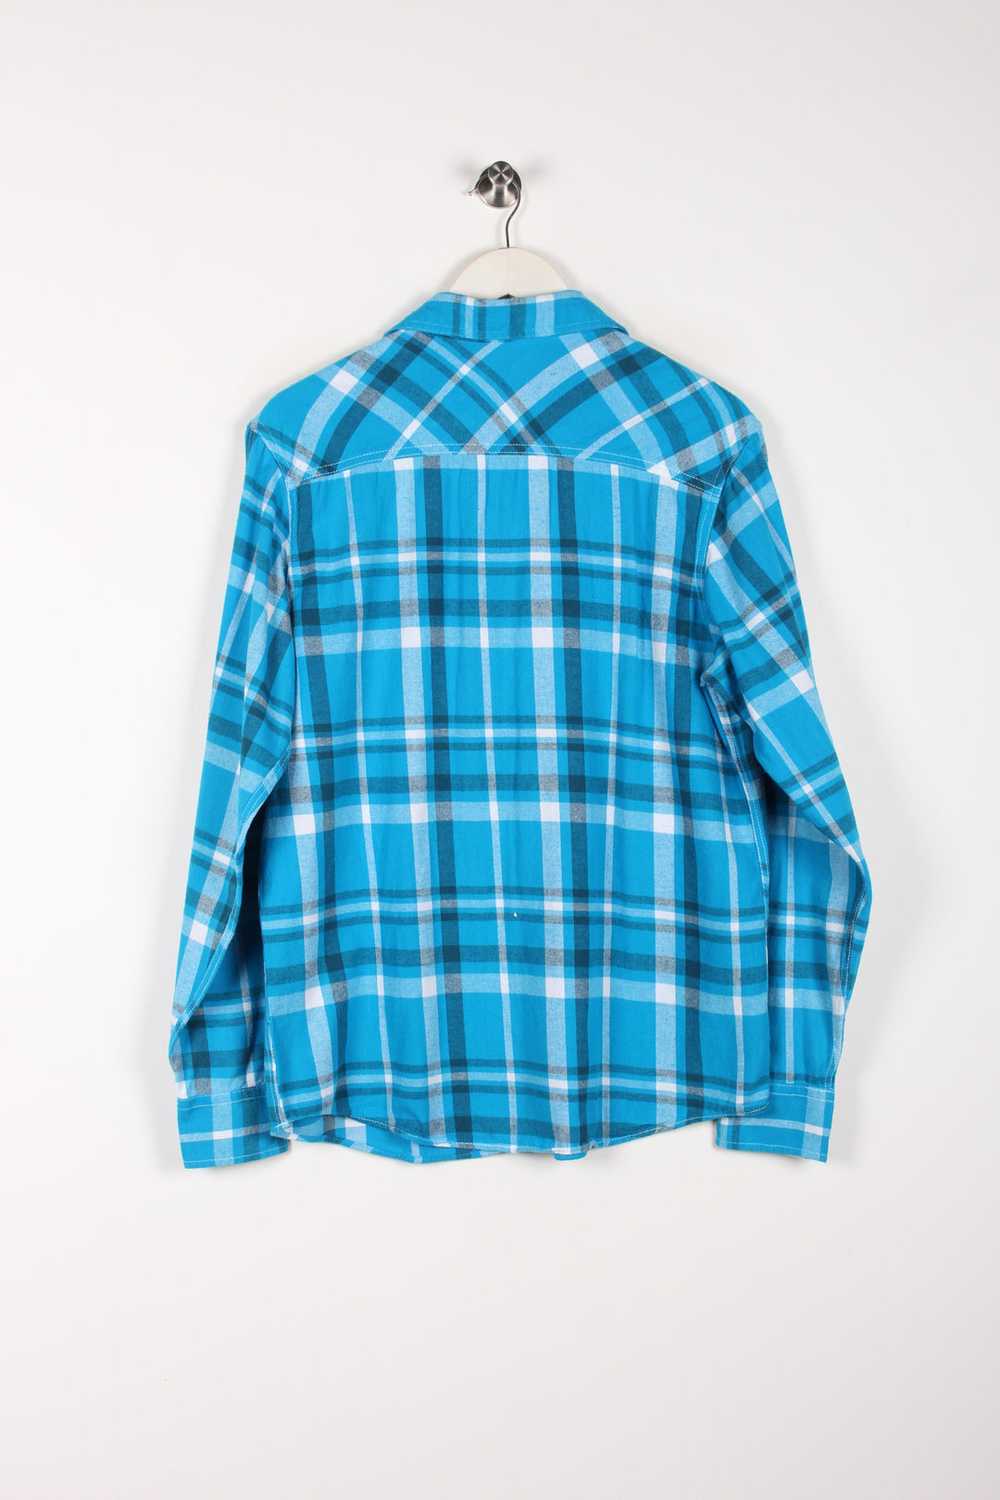 Vintage Plaid Flannel Shirt Medium - image 3